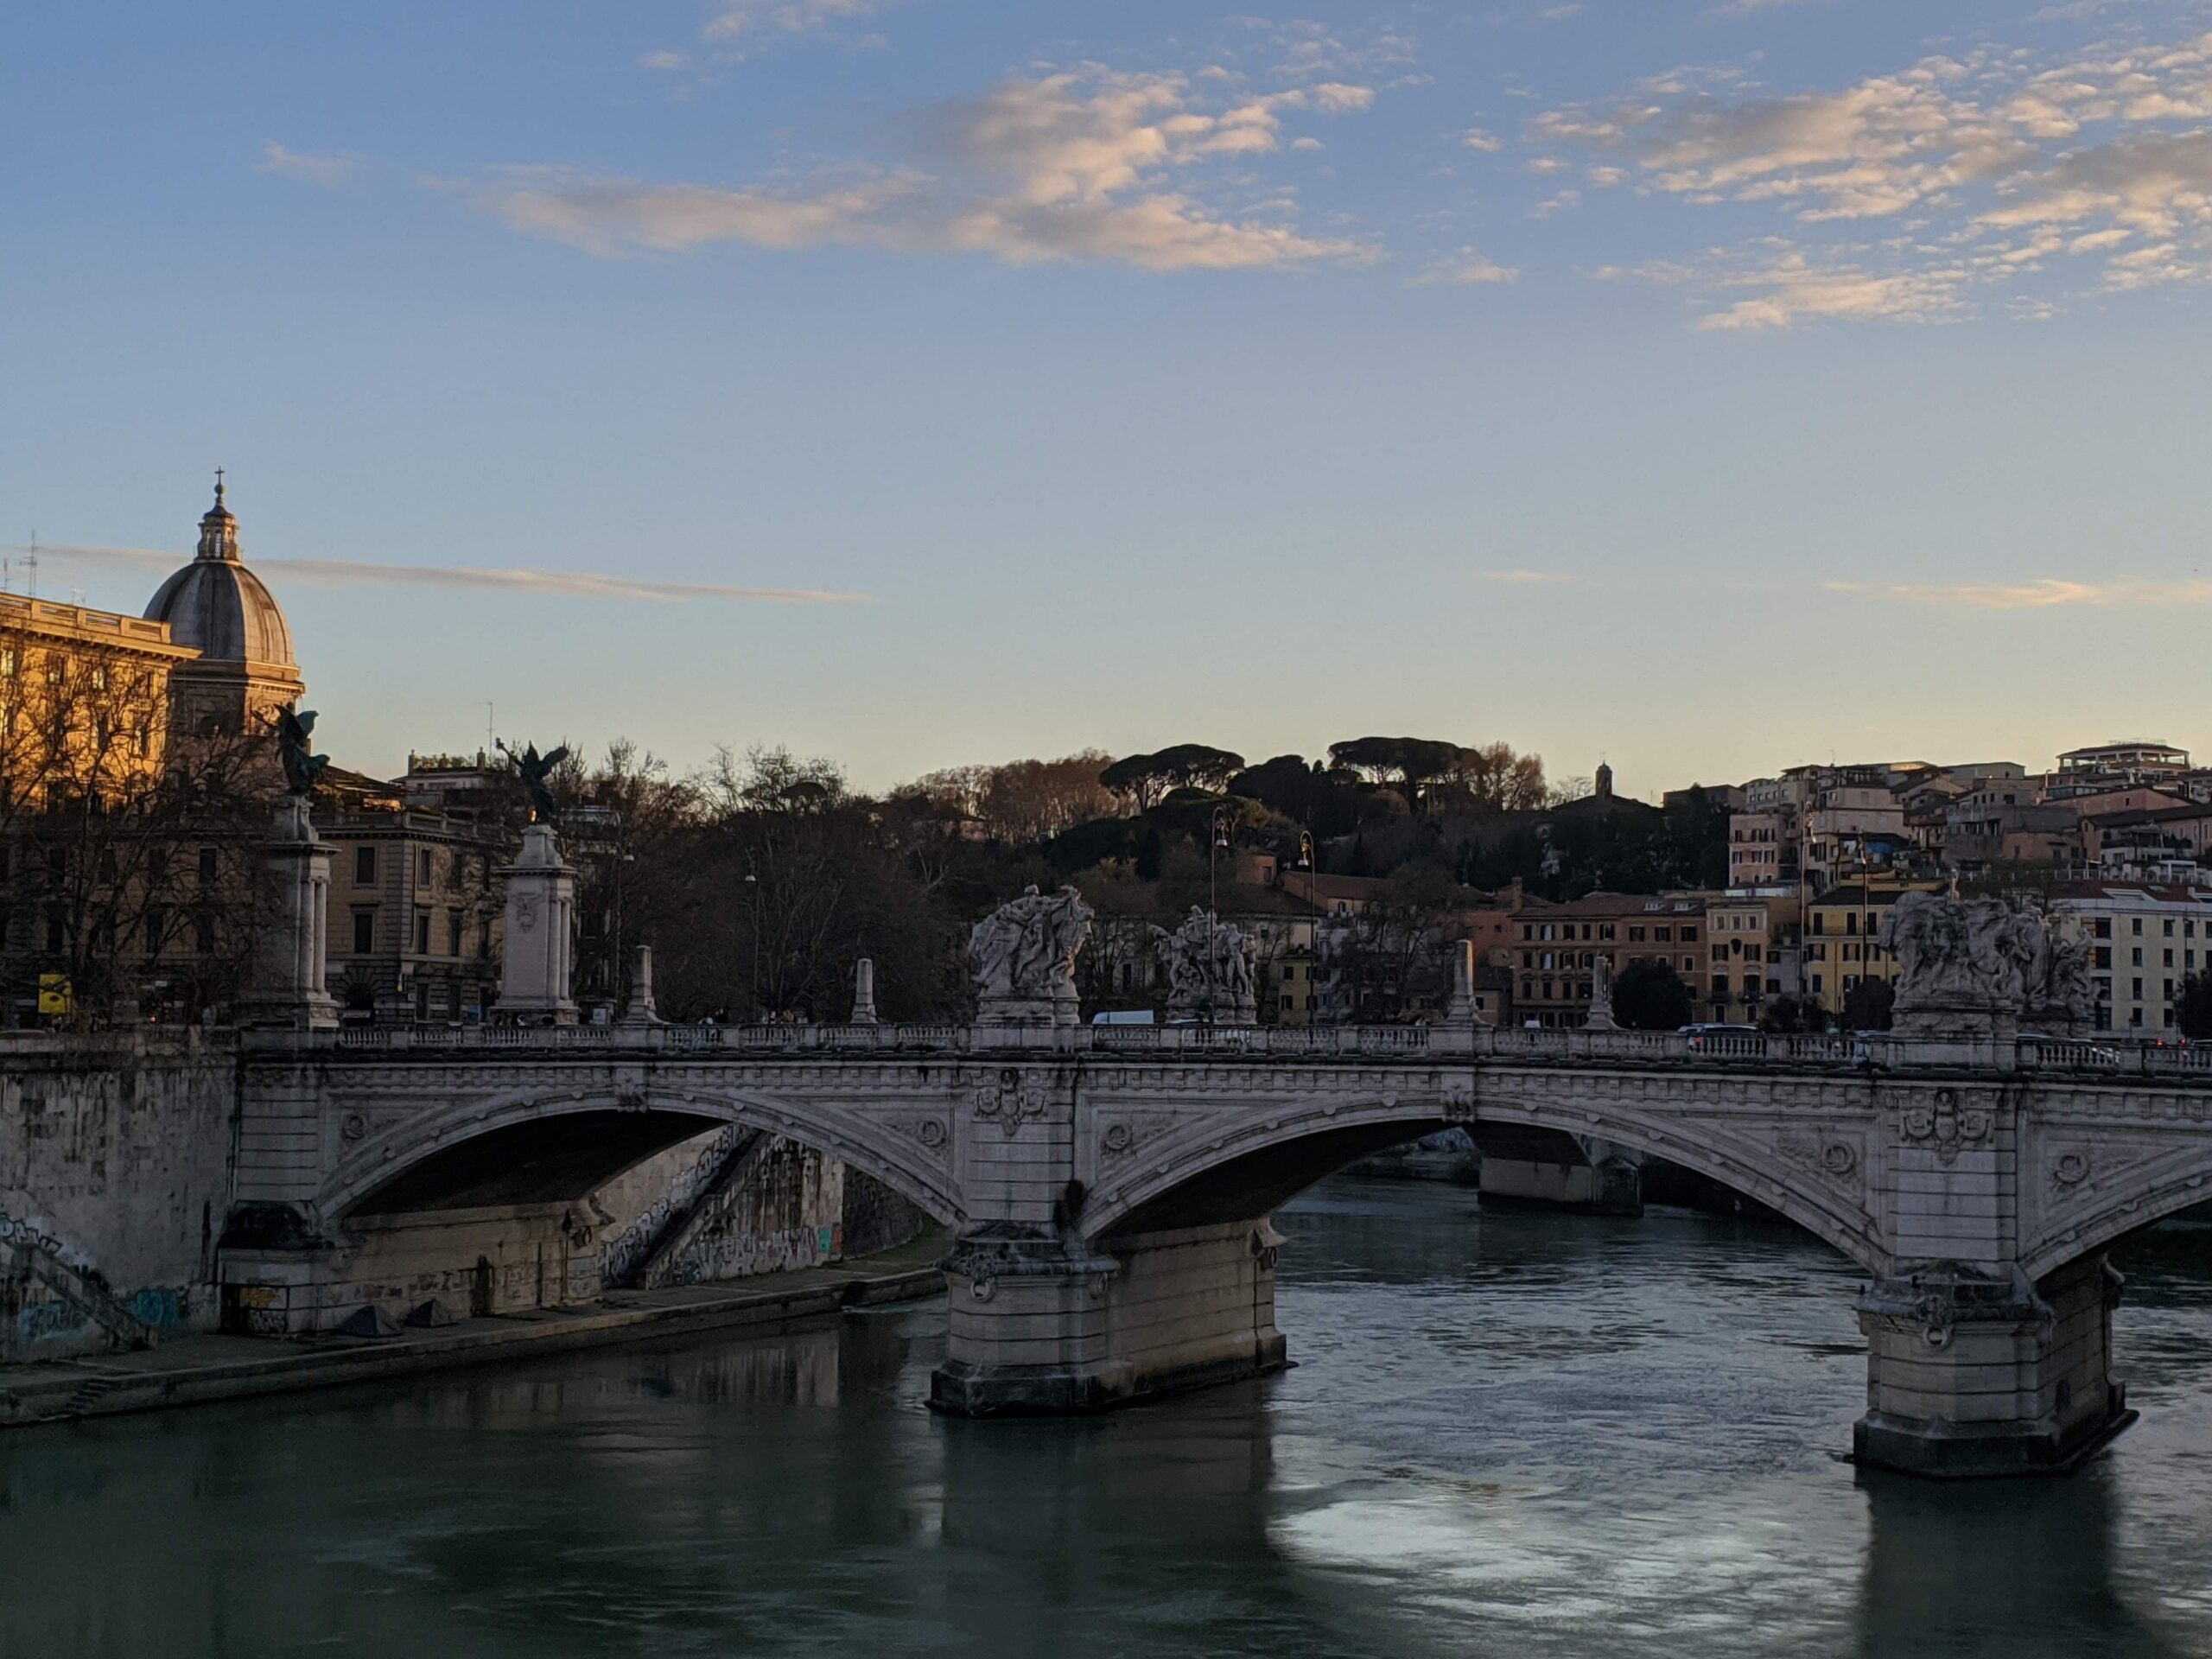 A imagem mostra uma ponte de pedra ornamentada com estátuas e balaustradas atravessando um rio tranquilo, com edifícios históricos ao fundo sob um céu azul claro. As águas calmas e as sombras suaves indicam que o sol está se pondo em Roma.